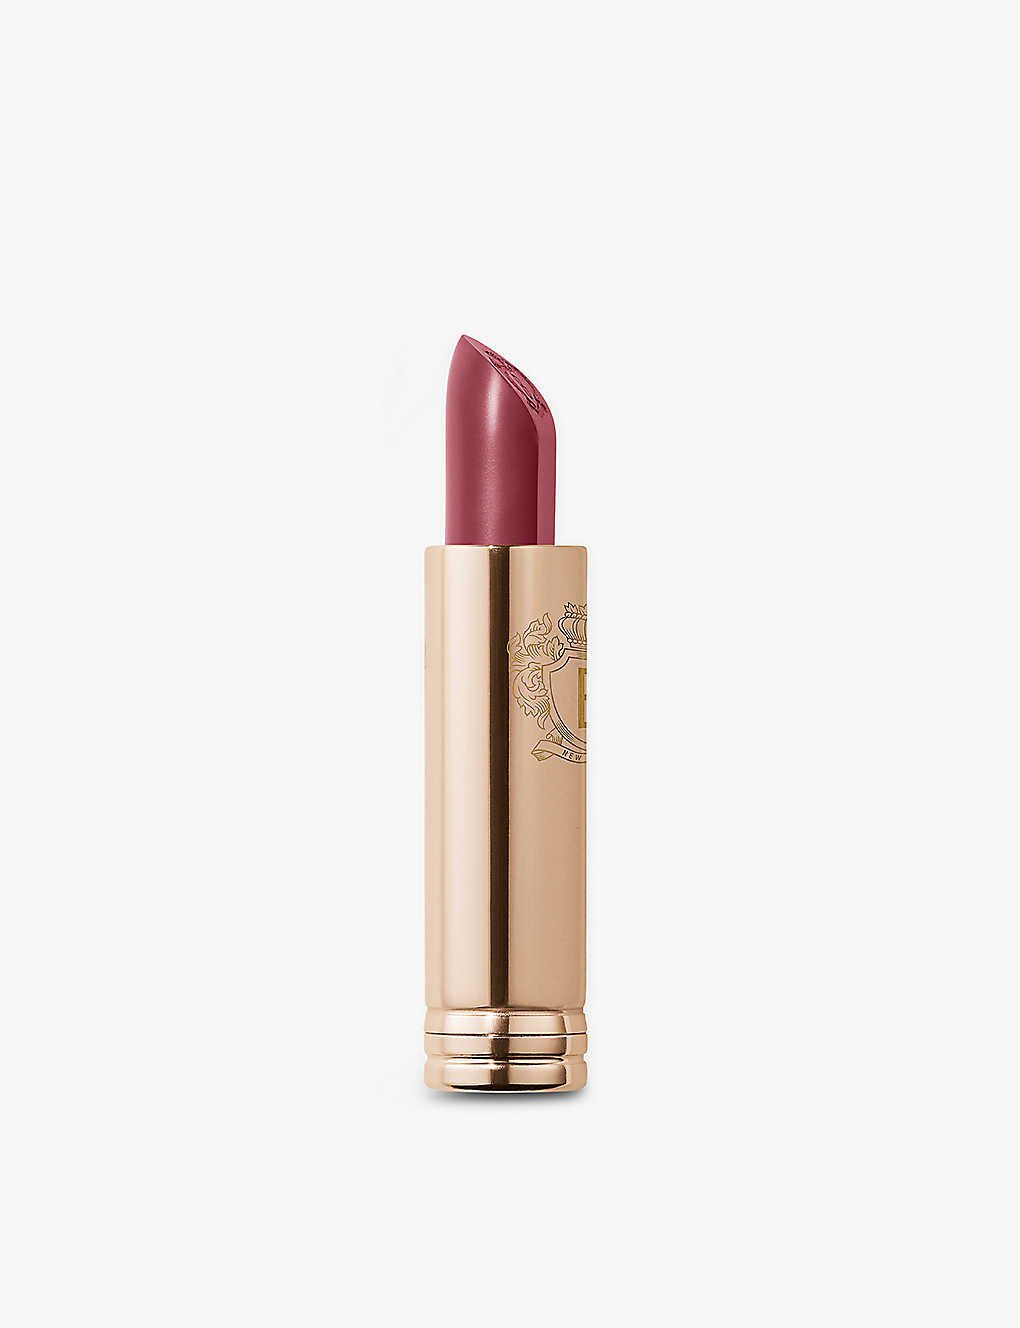 Bobbi Brown Soft Berry Luxe Lip Colour Lipstick Refill 3.8g